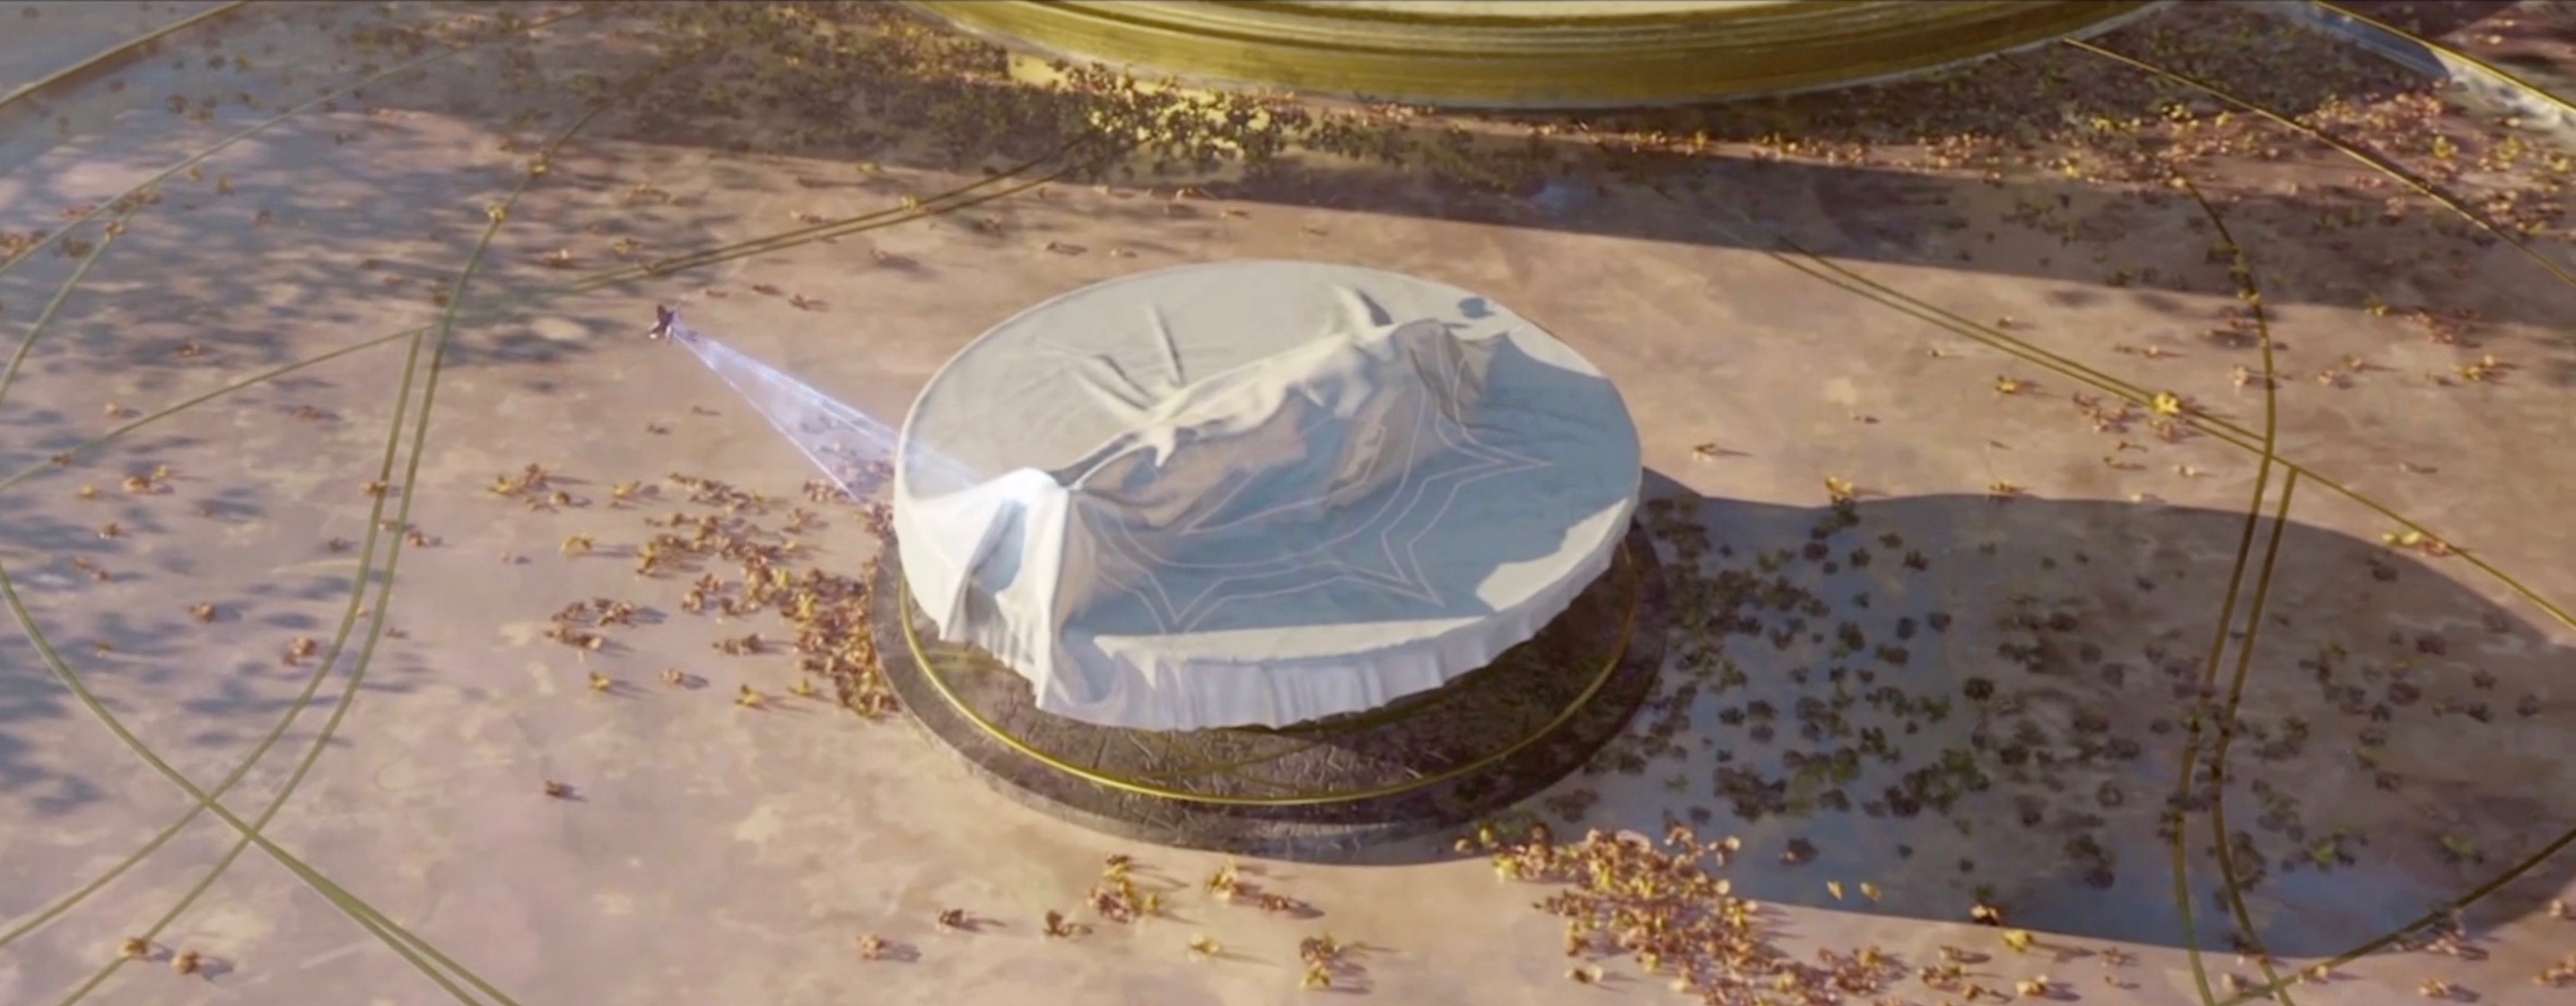 Destiny 2: Forsaken – Geheime Cutscene bringt überraschende Wendung